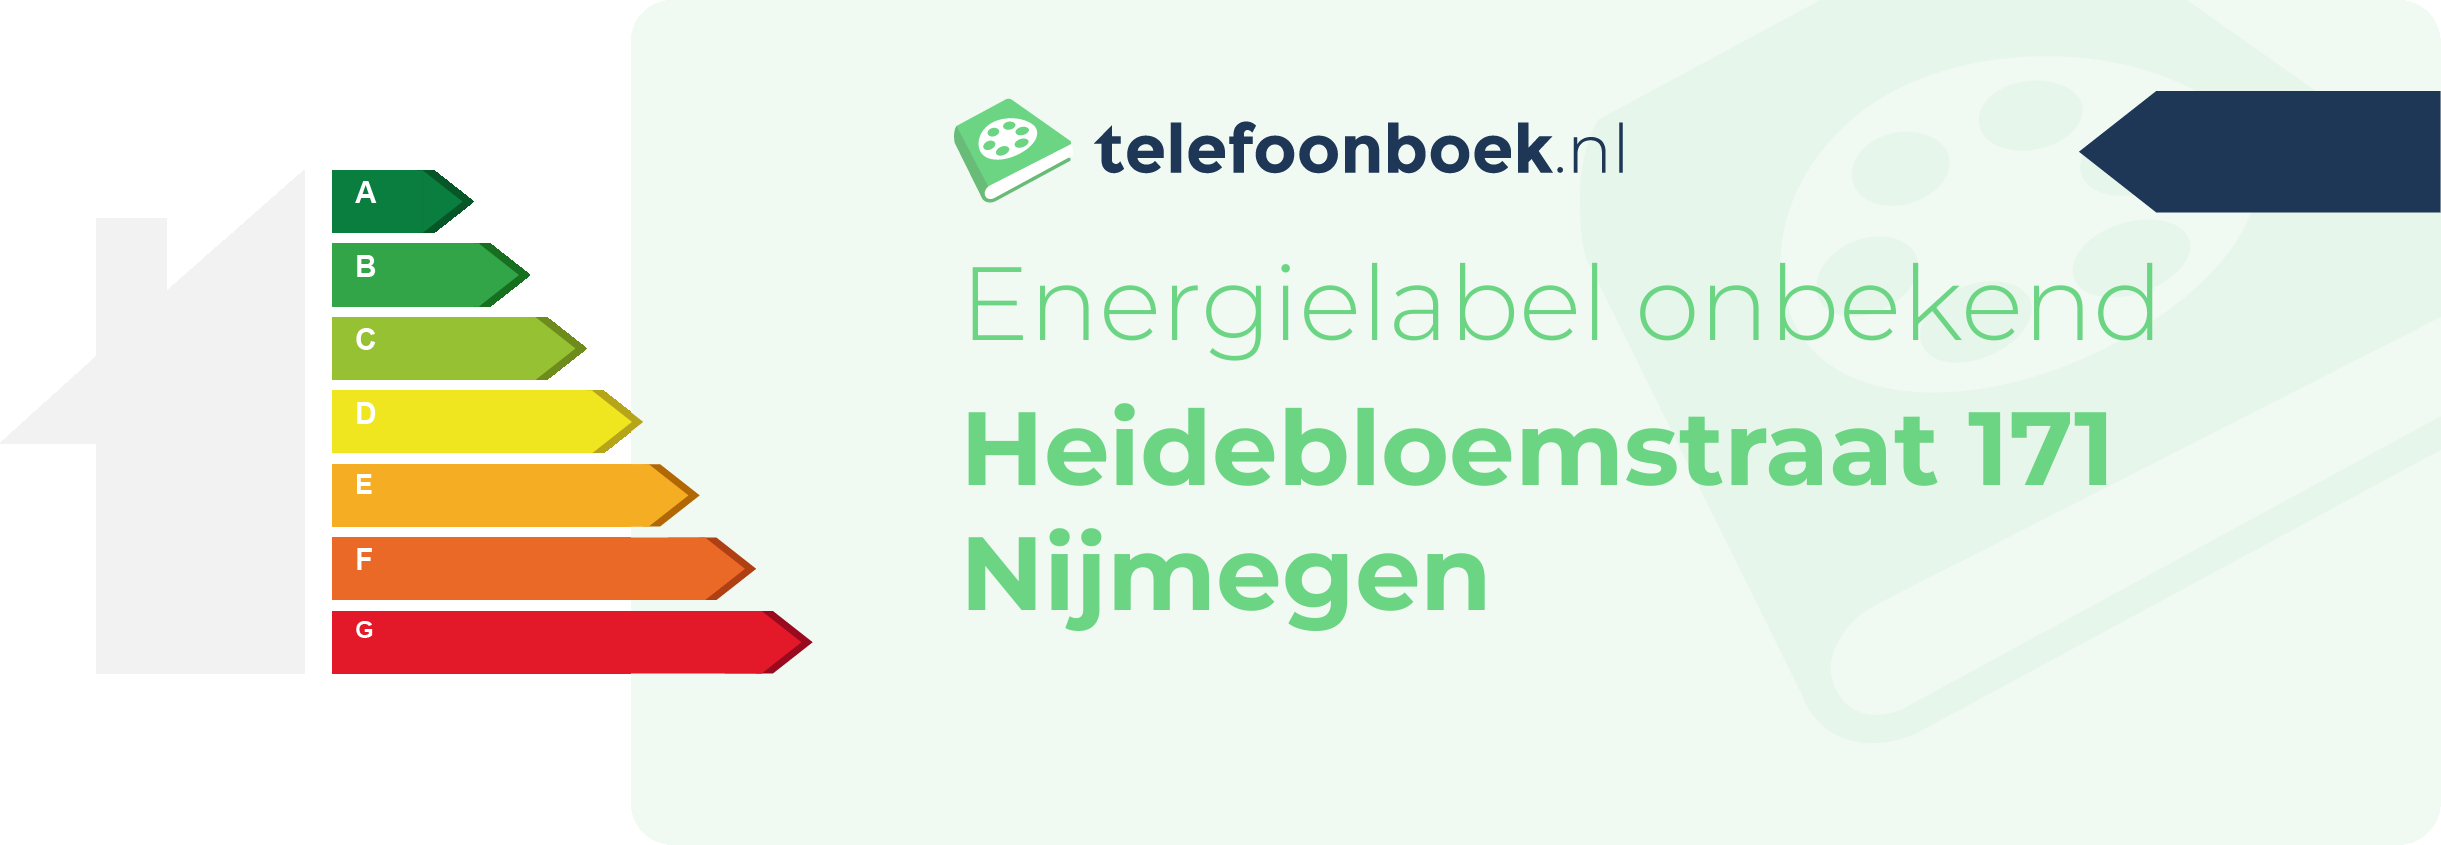 Energielabel Heidebloemstraat 171 Nijmegen